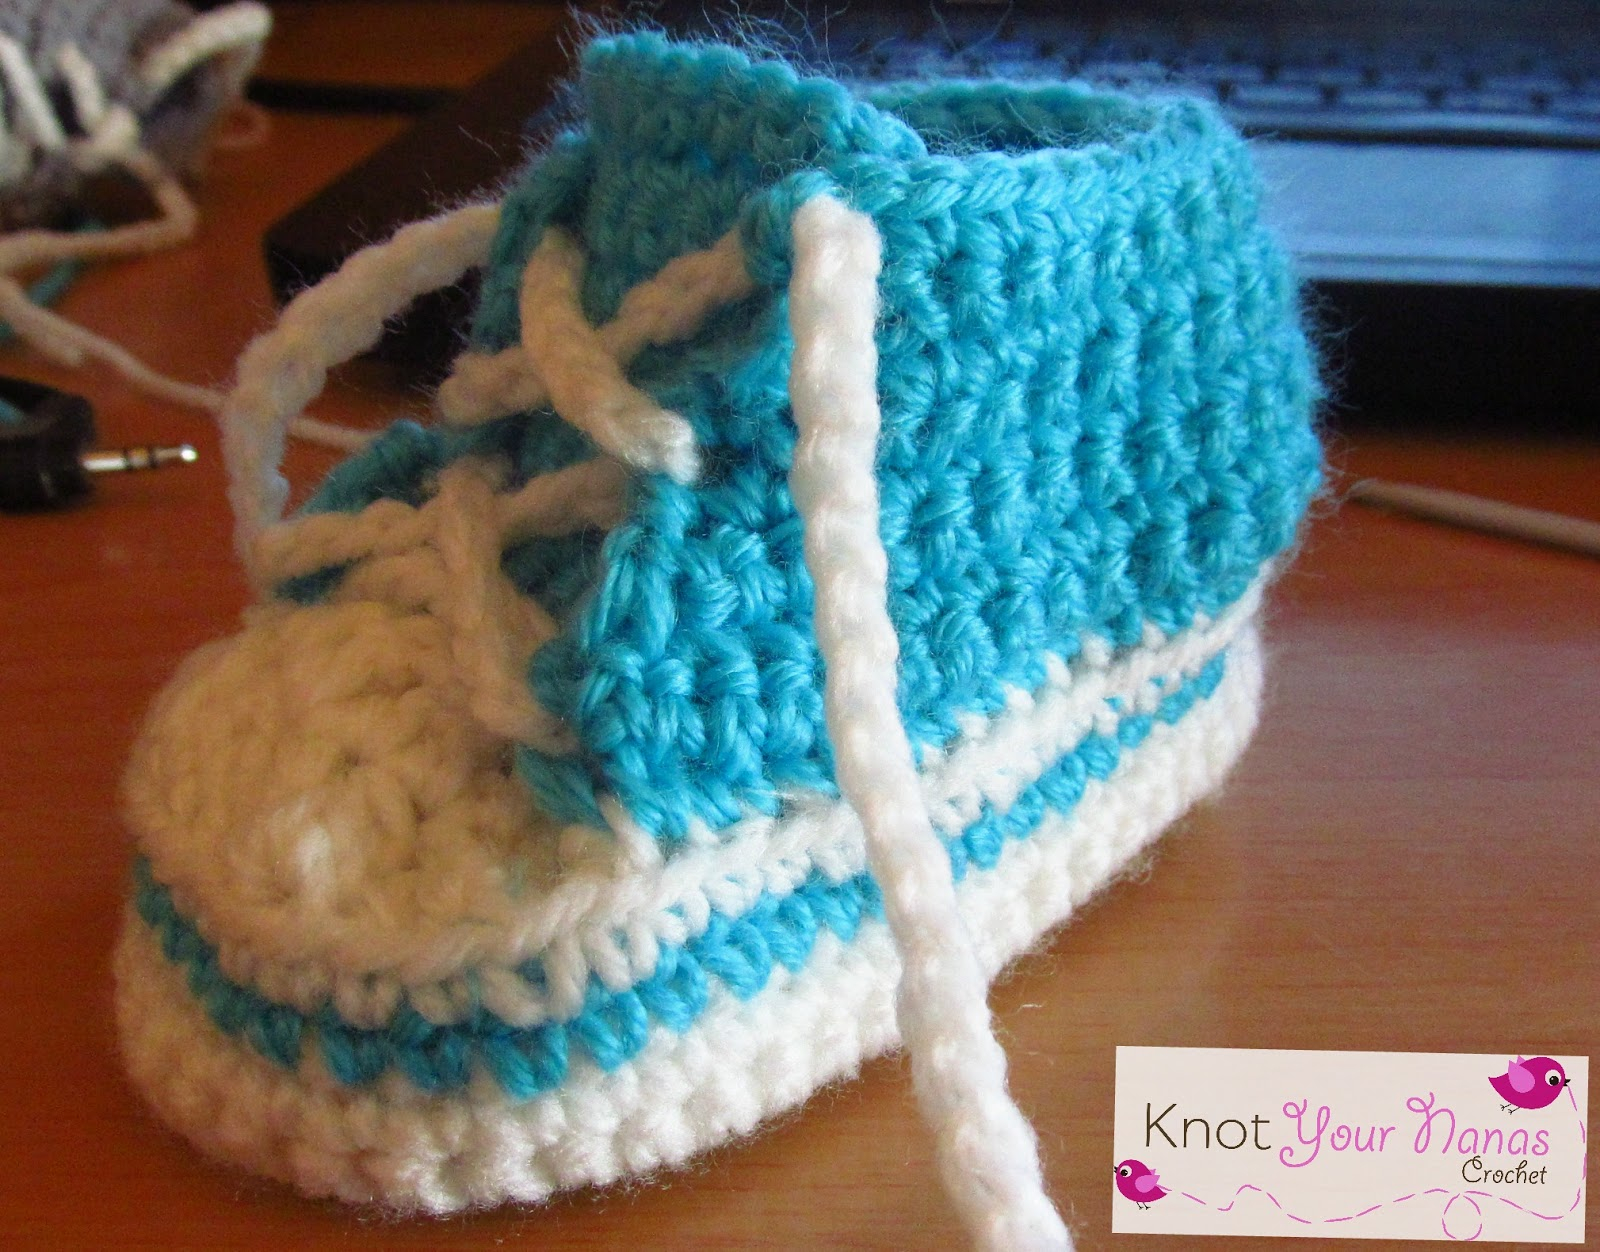 Converse Crochet Pattern Knot Your Nanas Crochet Crochet Conversehigh Tops 6 12 Months